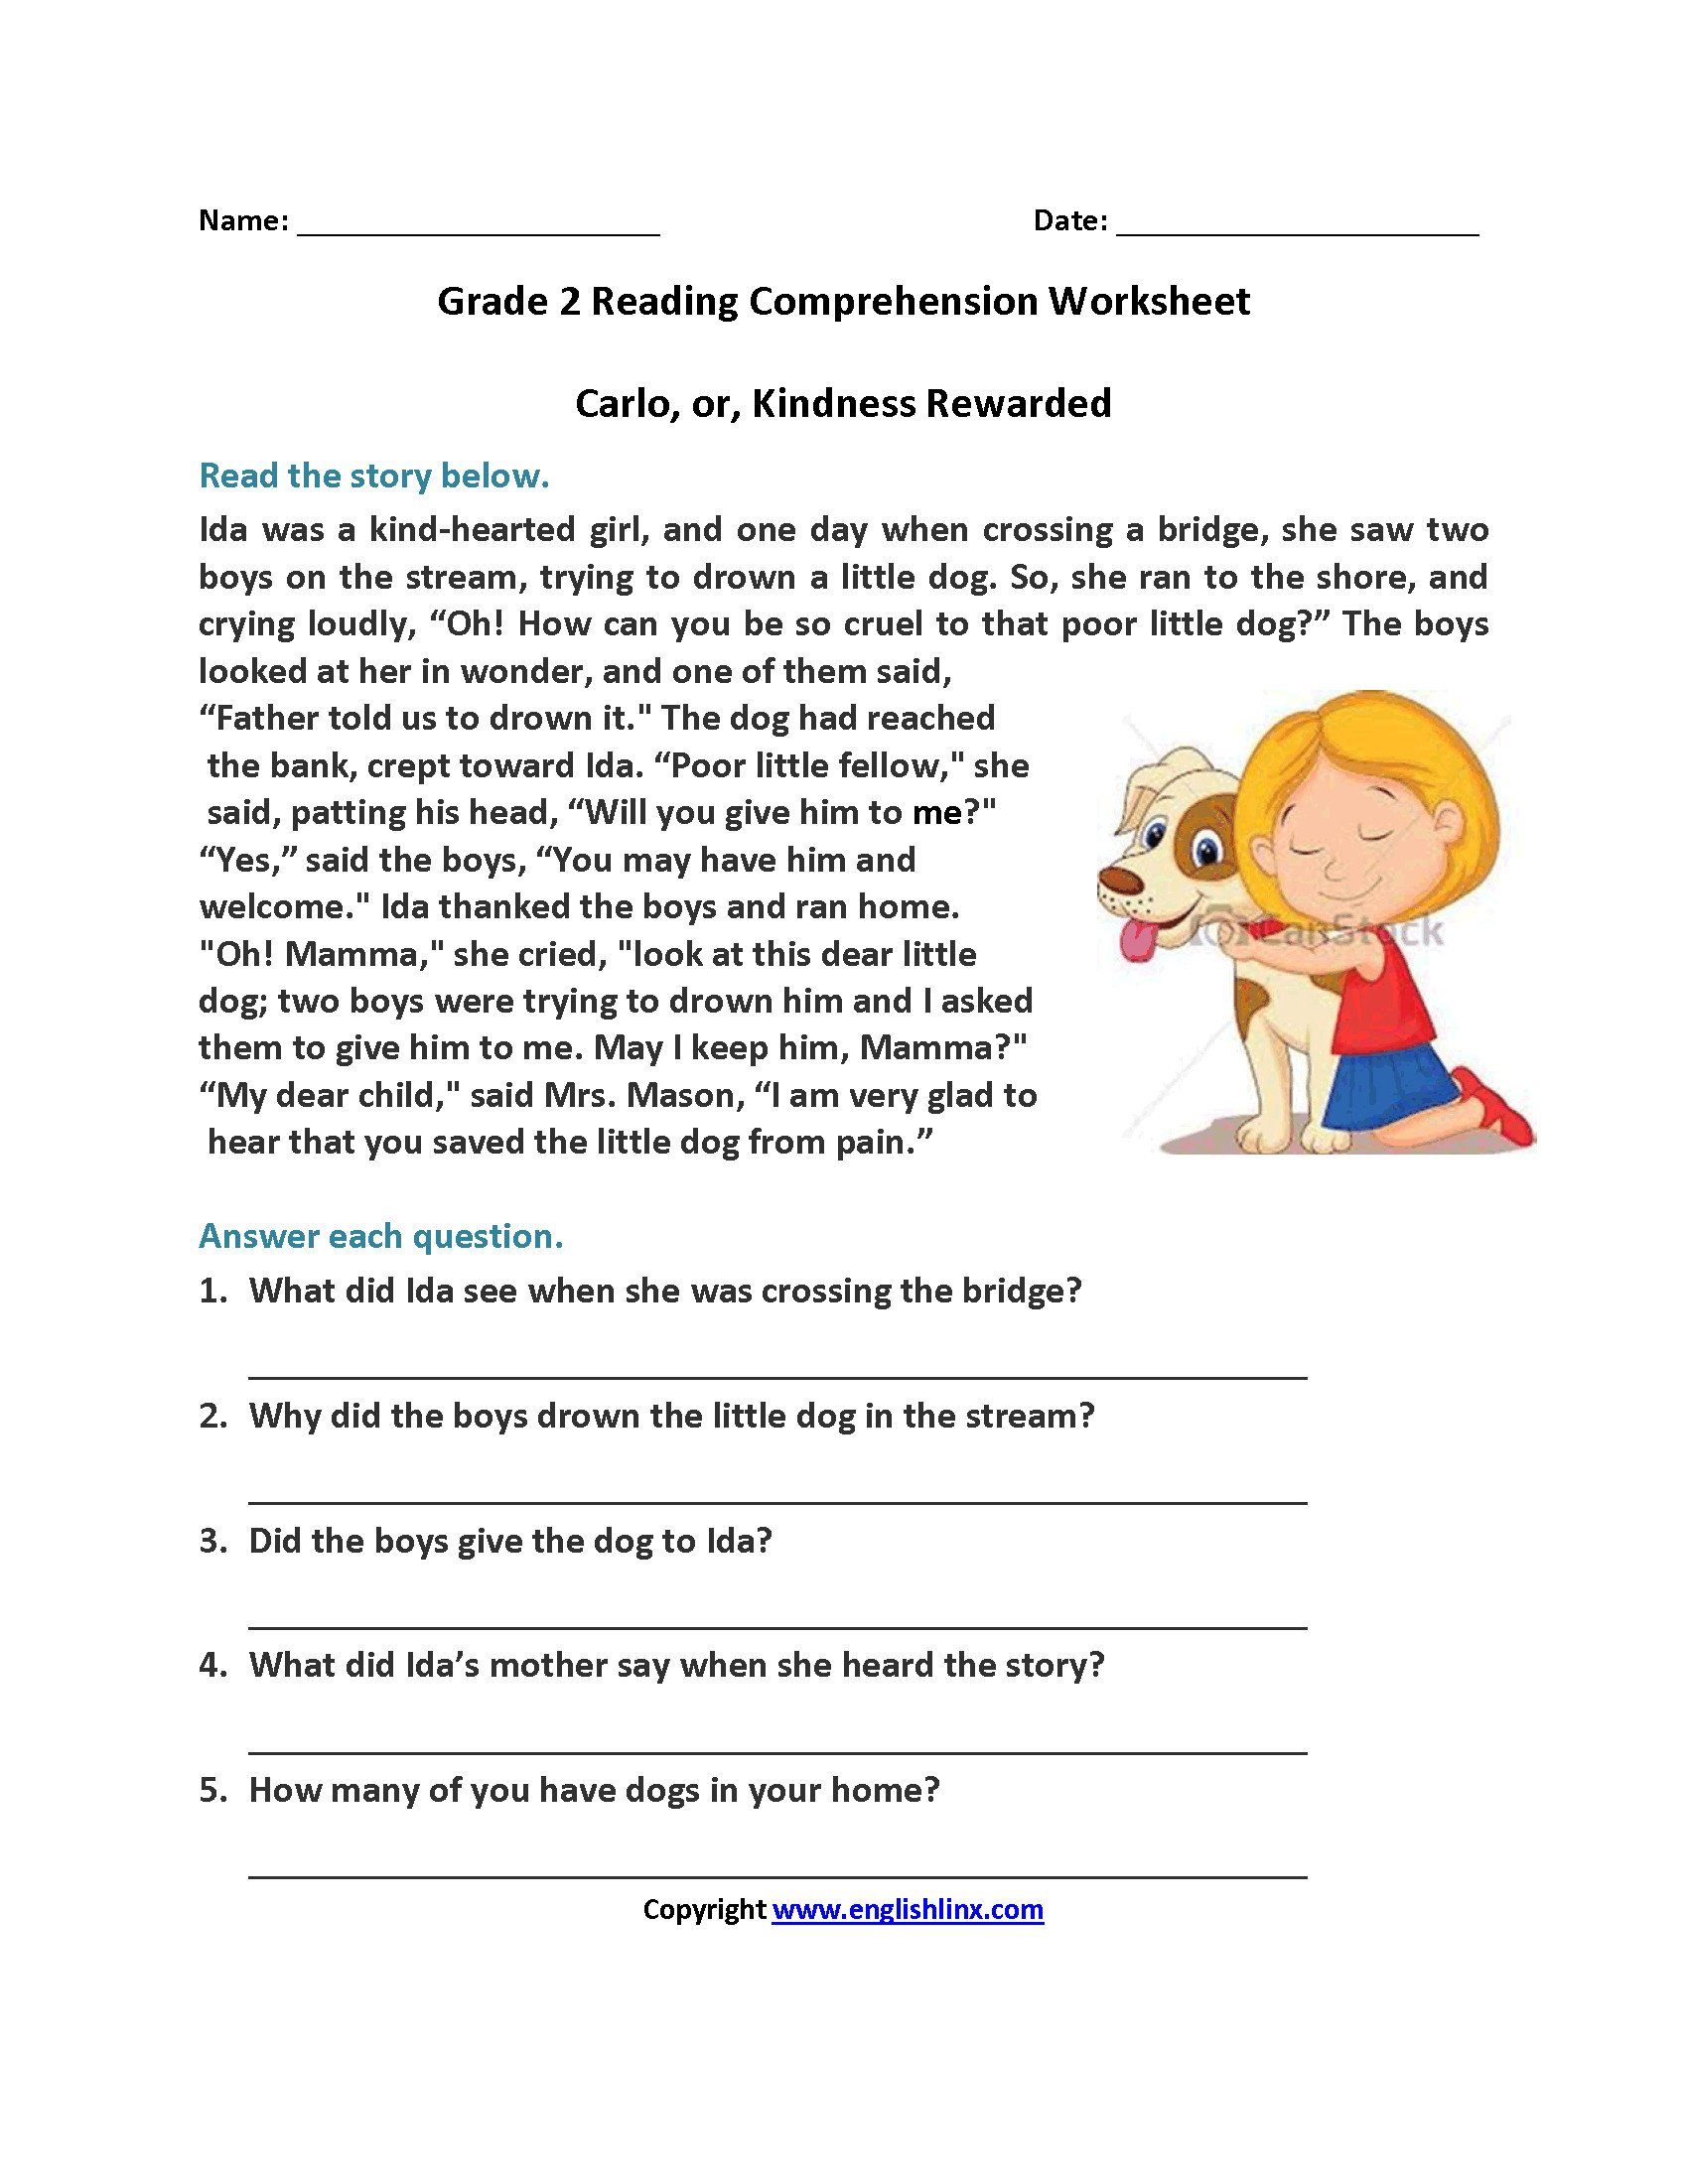 6Th Grade Reading Comprehension Worksheet Pdf  Justswimfl Regarding Reading Comprehension Worksheets For Grade 3 Pdf